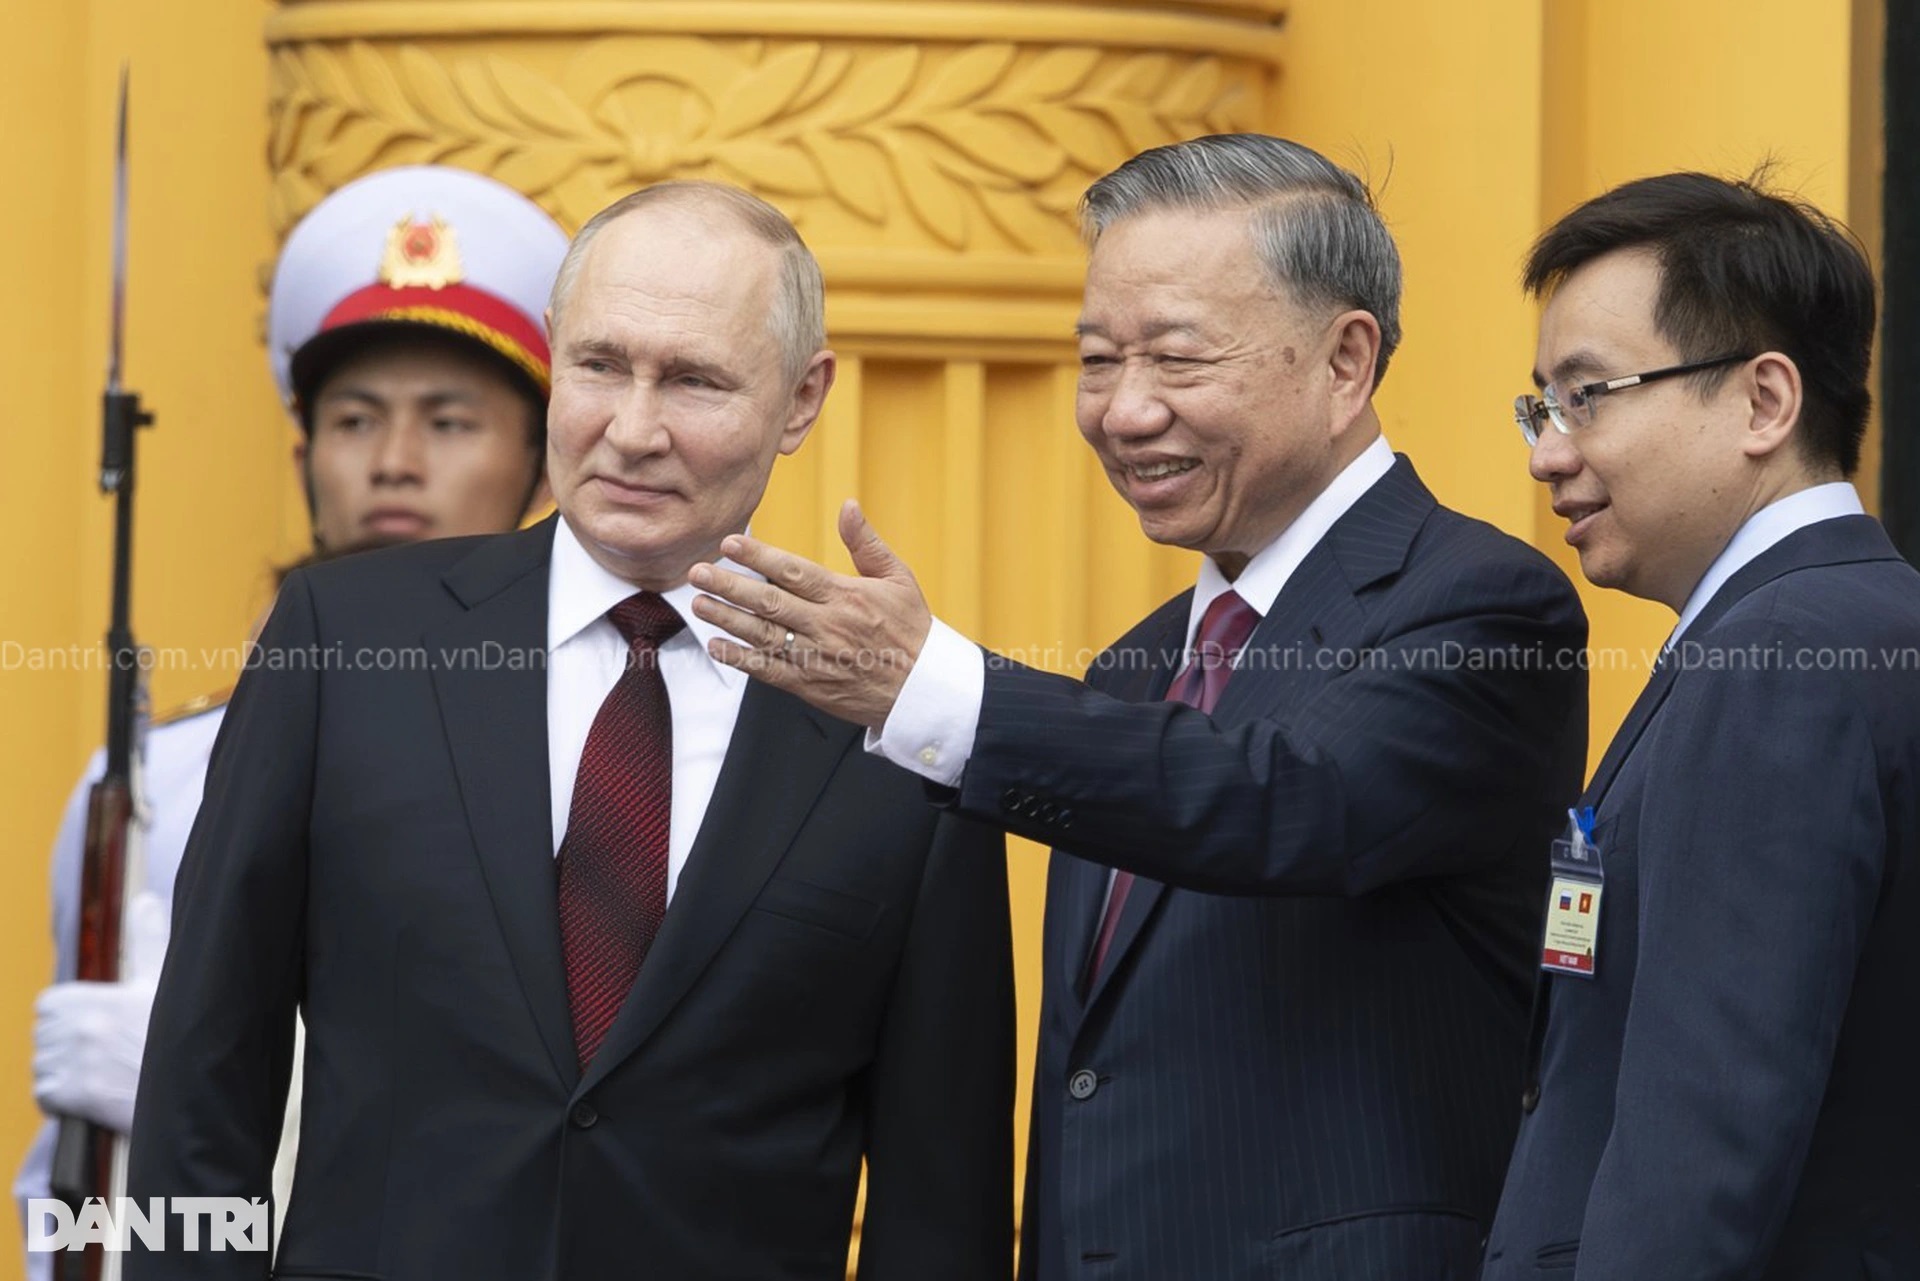 Chuyến thăm của Tổng thống Putin tạo xung lực mới cho hợp tác Việt - Nga